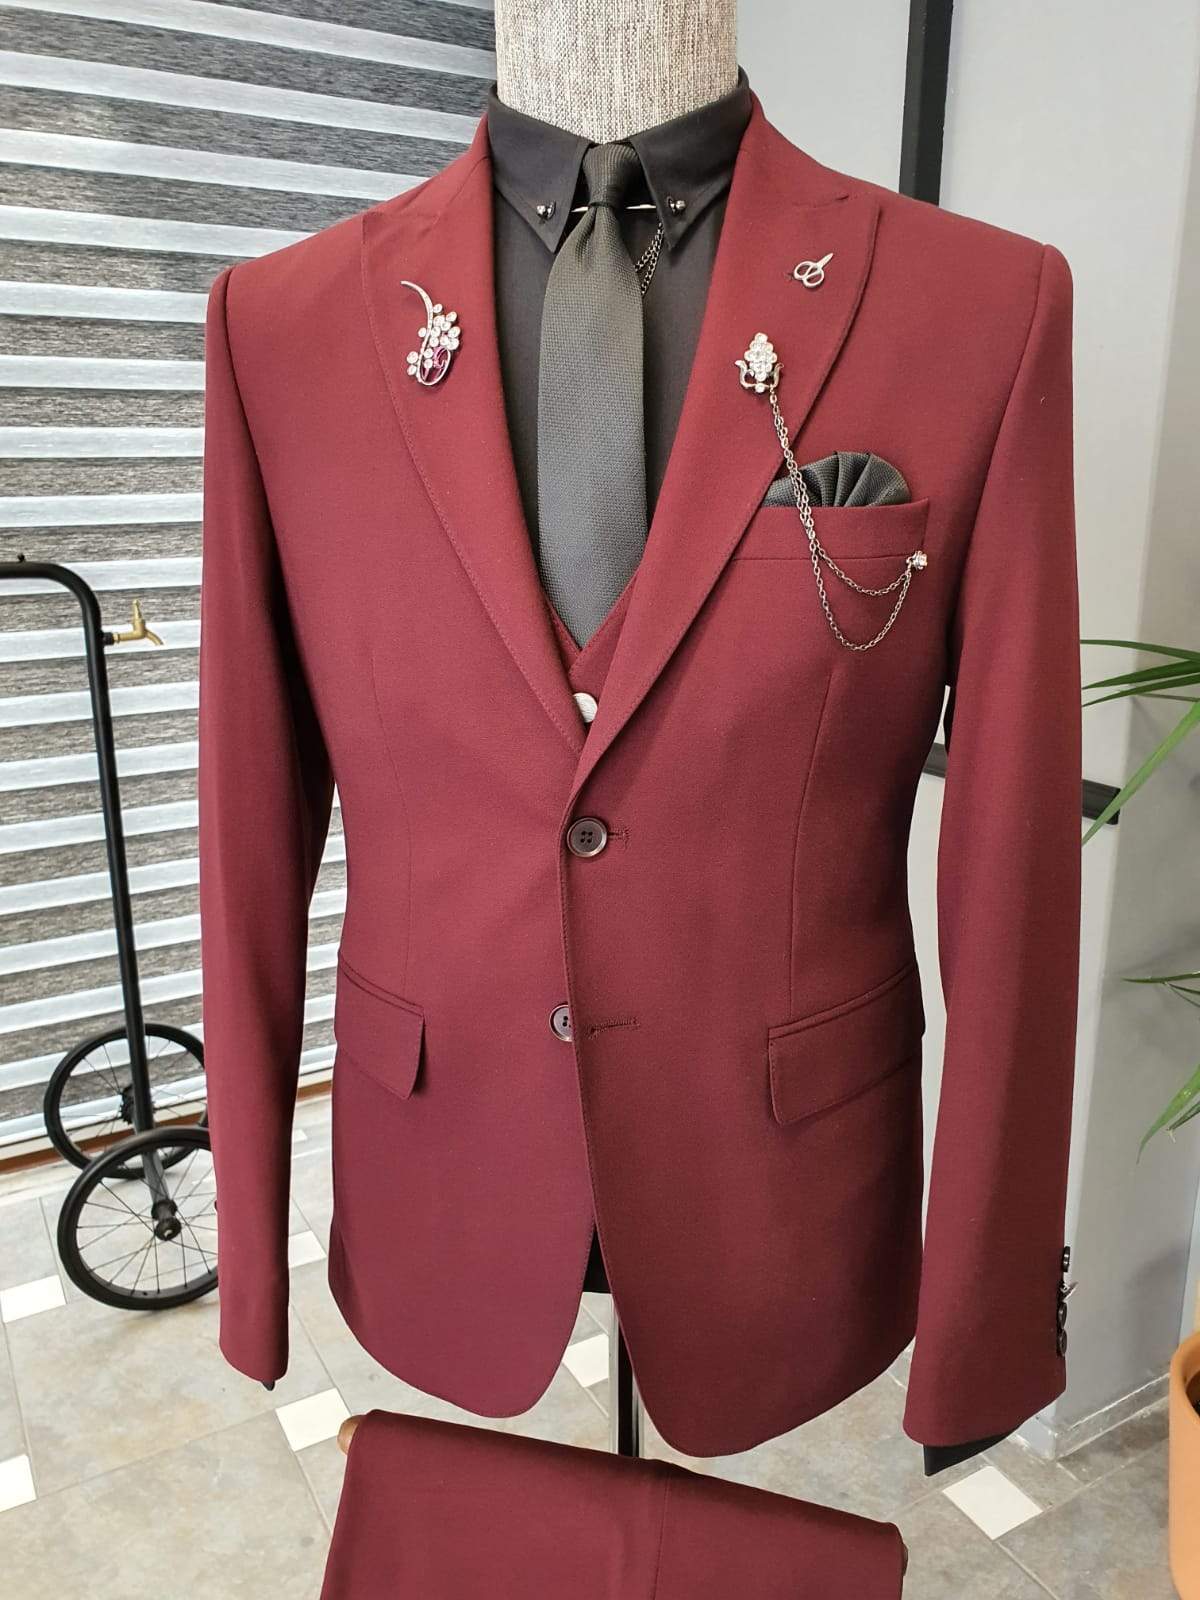 2021 Latest Men's Suit Set Dark Green Formal Suit Jacket Pants Slim  Business Tuxedo 2 Piece Suit Terno Wedding Men's Suit S-6xl - Suits -  AliExpress